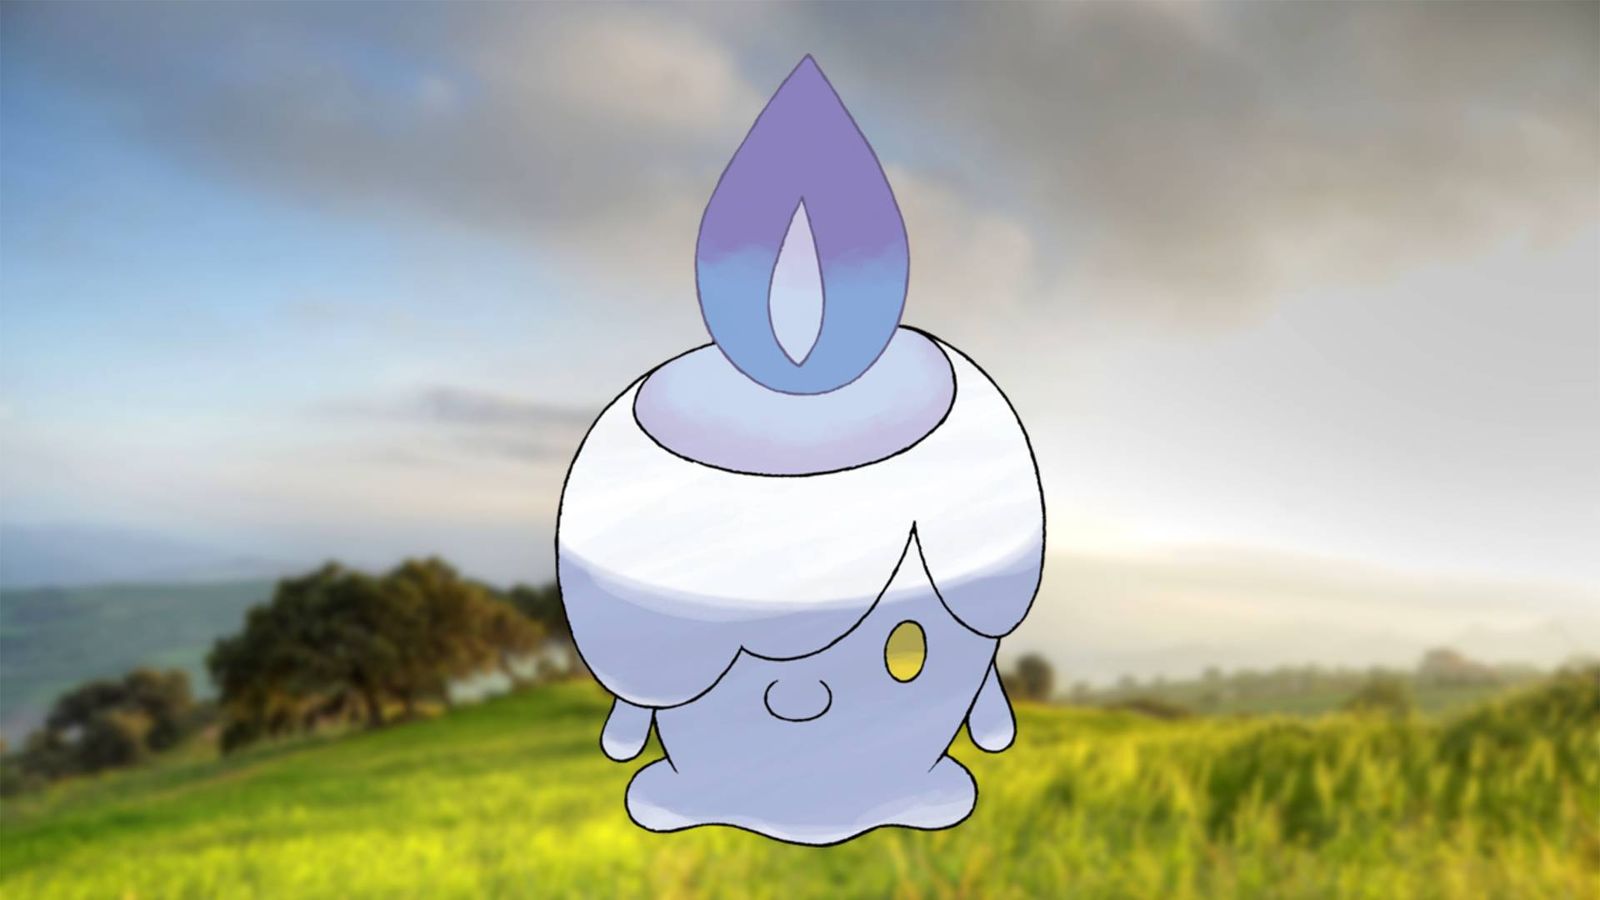 Image of Litwick in Pokémon GO.